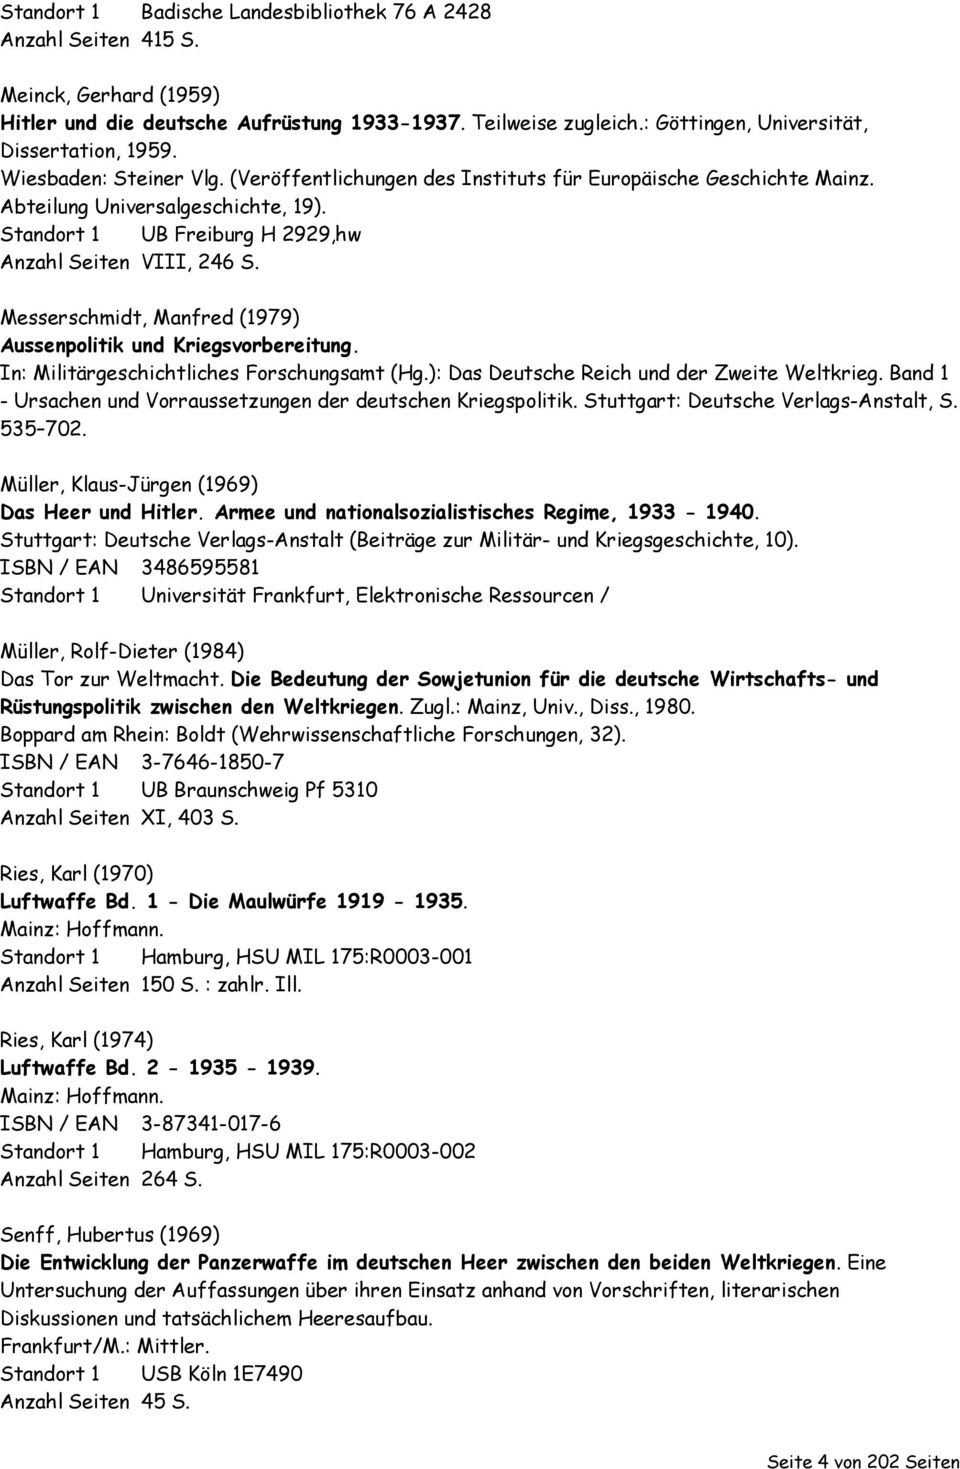 Standort 1 UB Freiburg H 2929,hw Anzahl Seiten VIII, 246 S. Messerschmidt, Manfred (1979) Aussenpolitik und Kriegsvorbereitung. In: Militärgeschichtliches Forschungsamt (Hg.